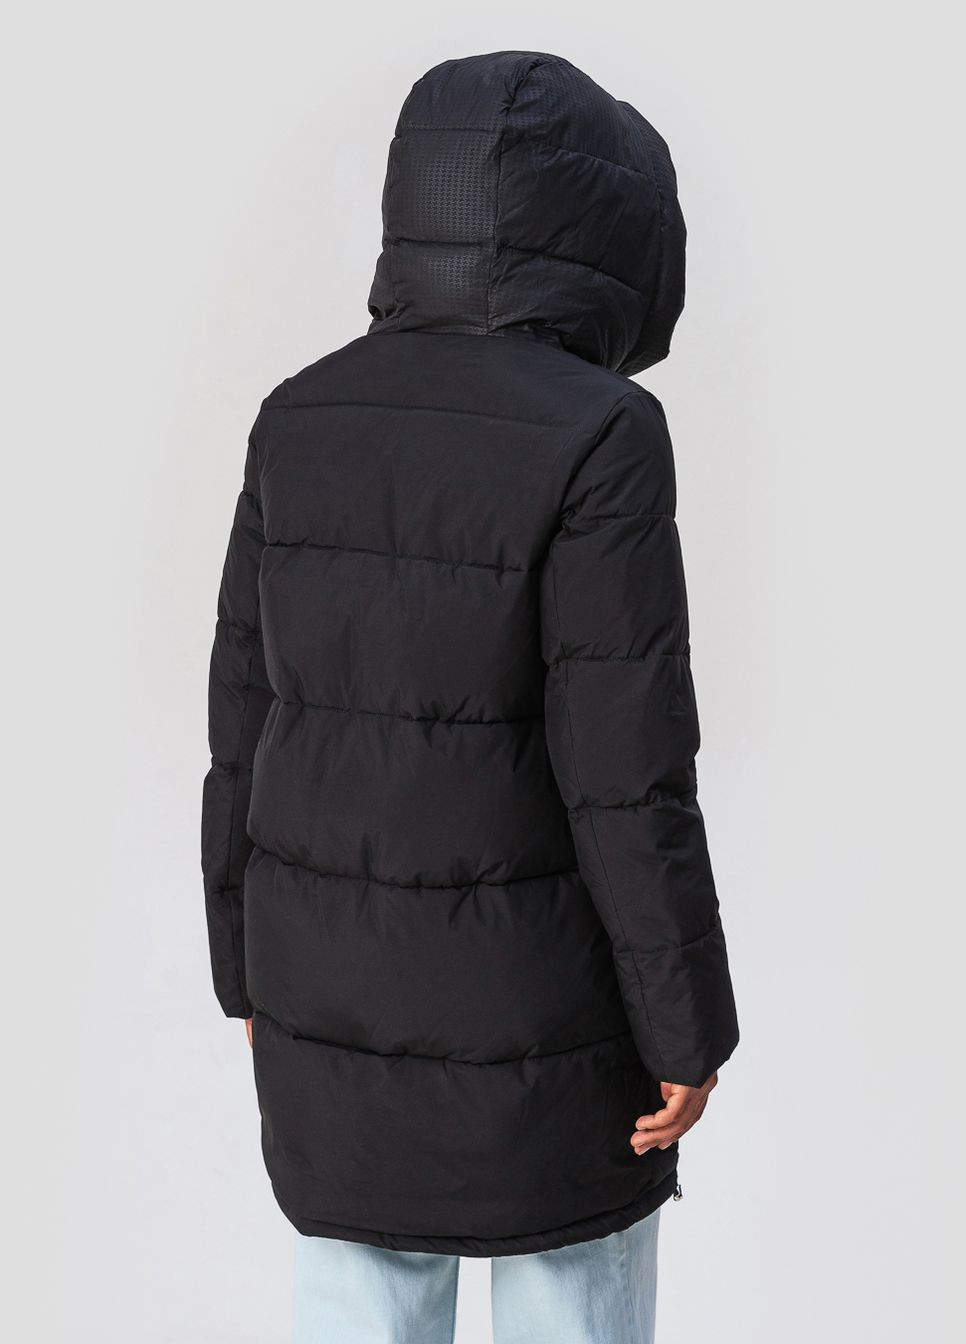 Черная зимняя куртка с капюшоном модель 3193 Visdeer